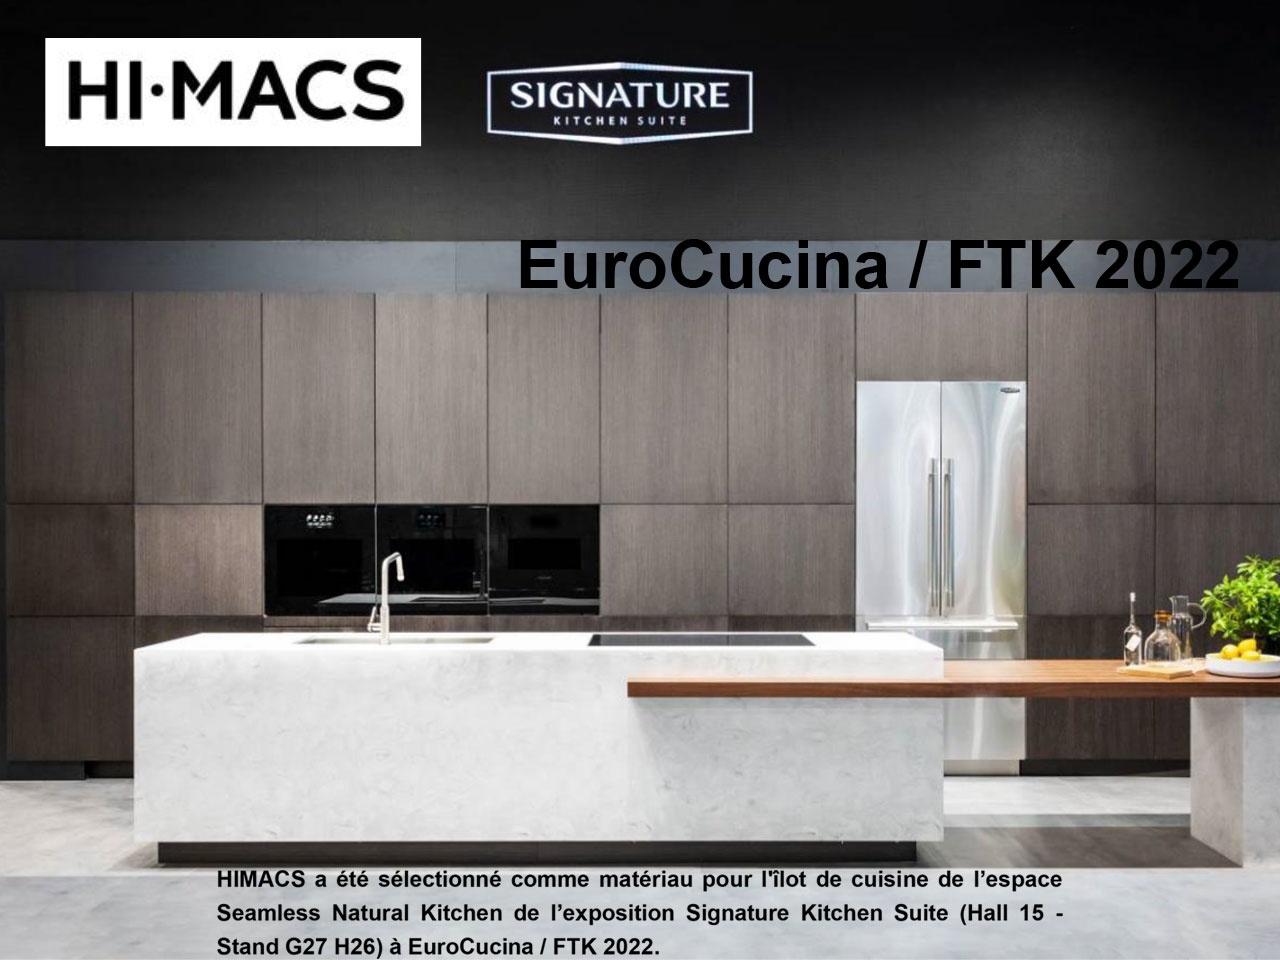 HIMACS pour Signature Kitchen Suite à EuroCucina / FTK 2022